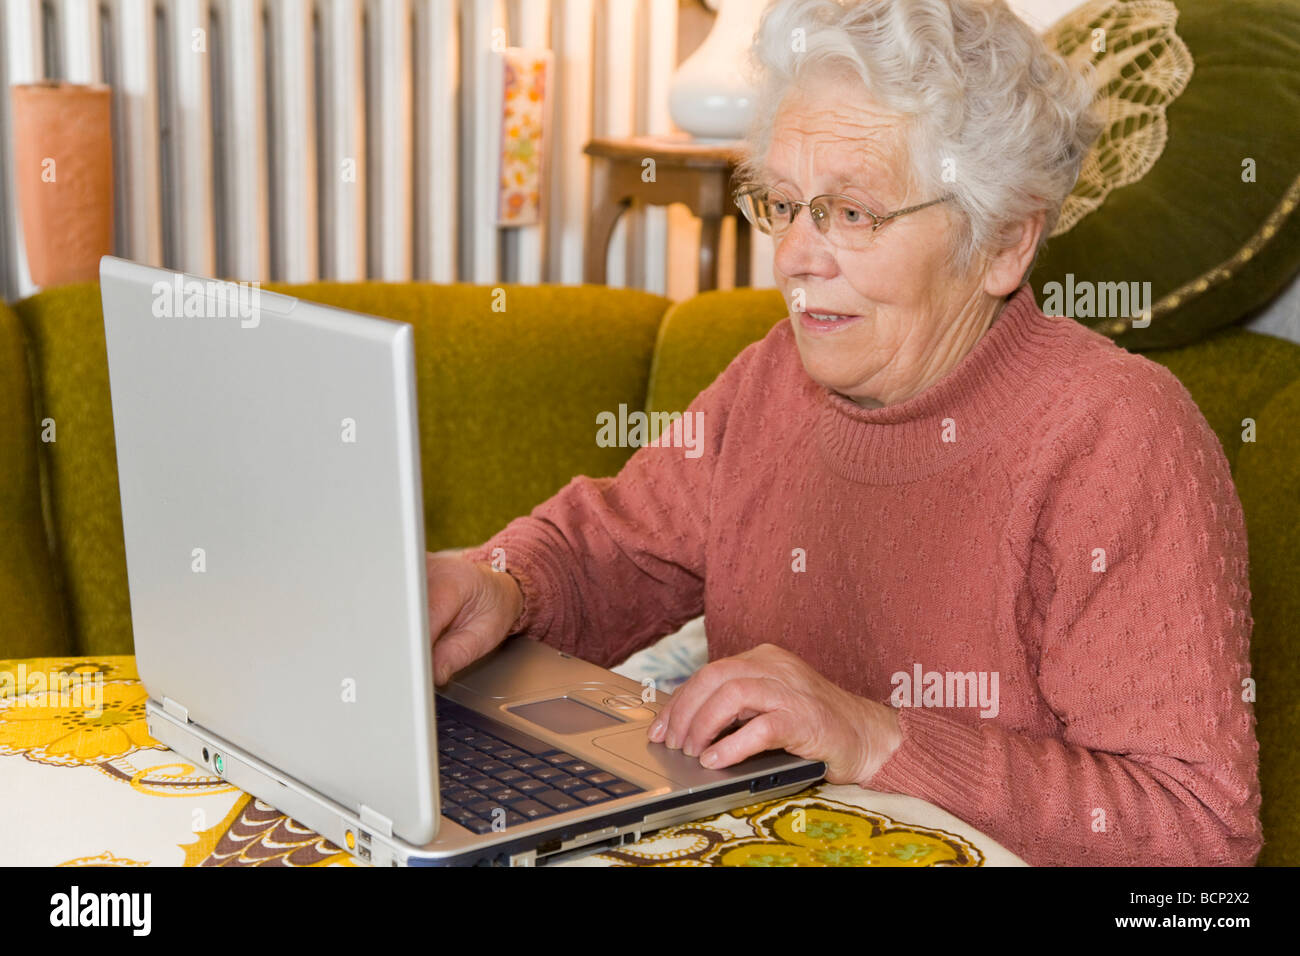 Frau in ihren Siebzigern sitzt im Wohnzimmer am Laptop Stock Photo